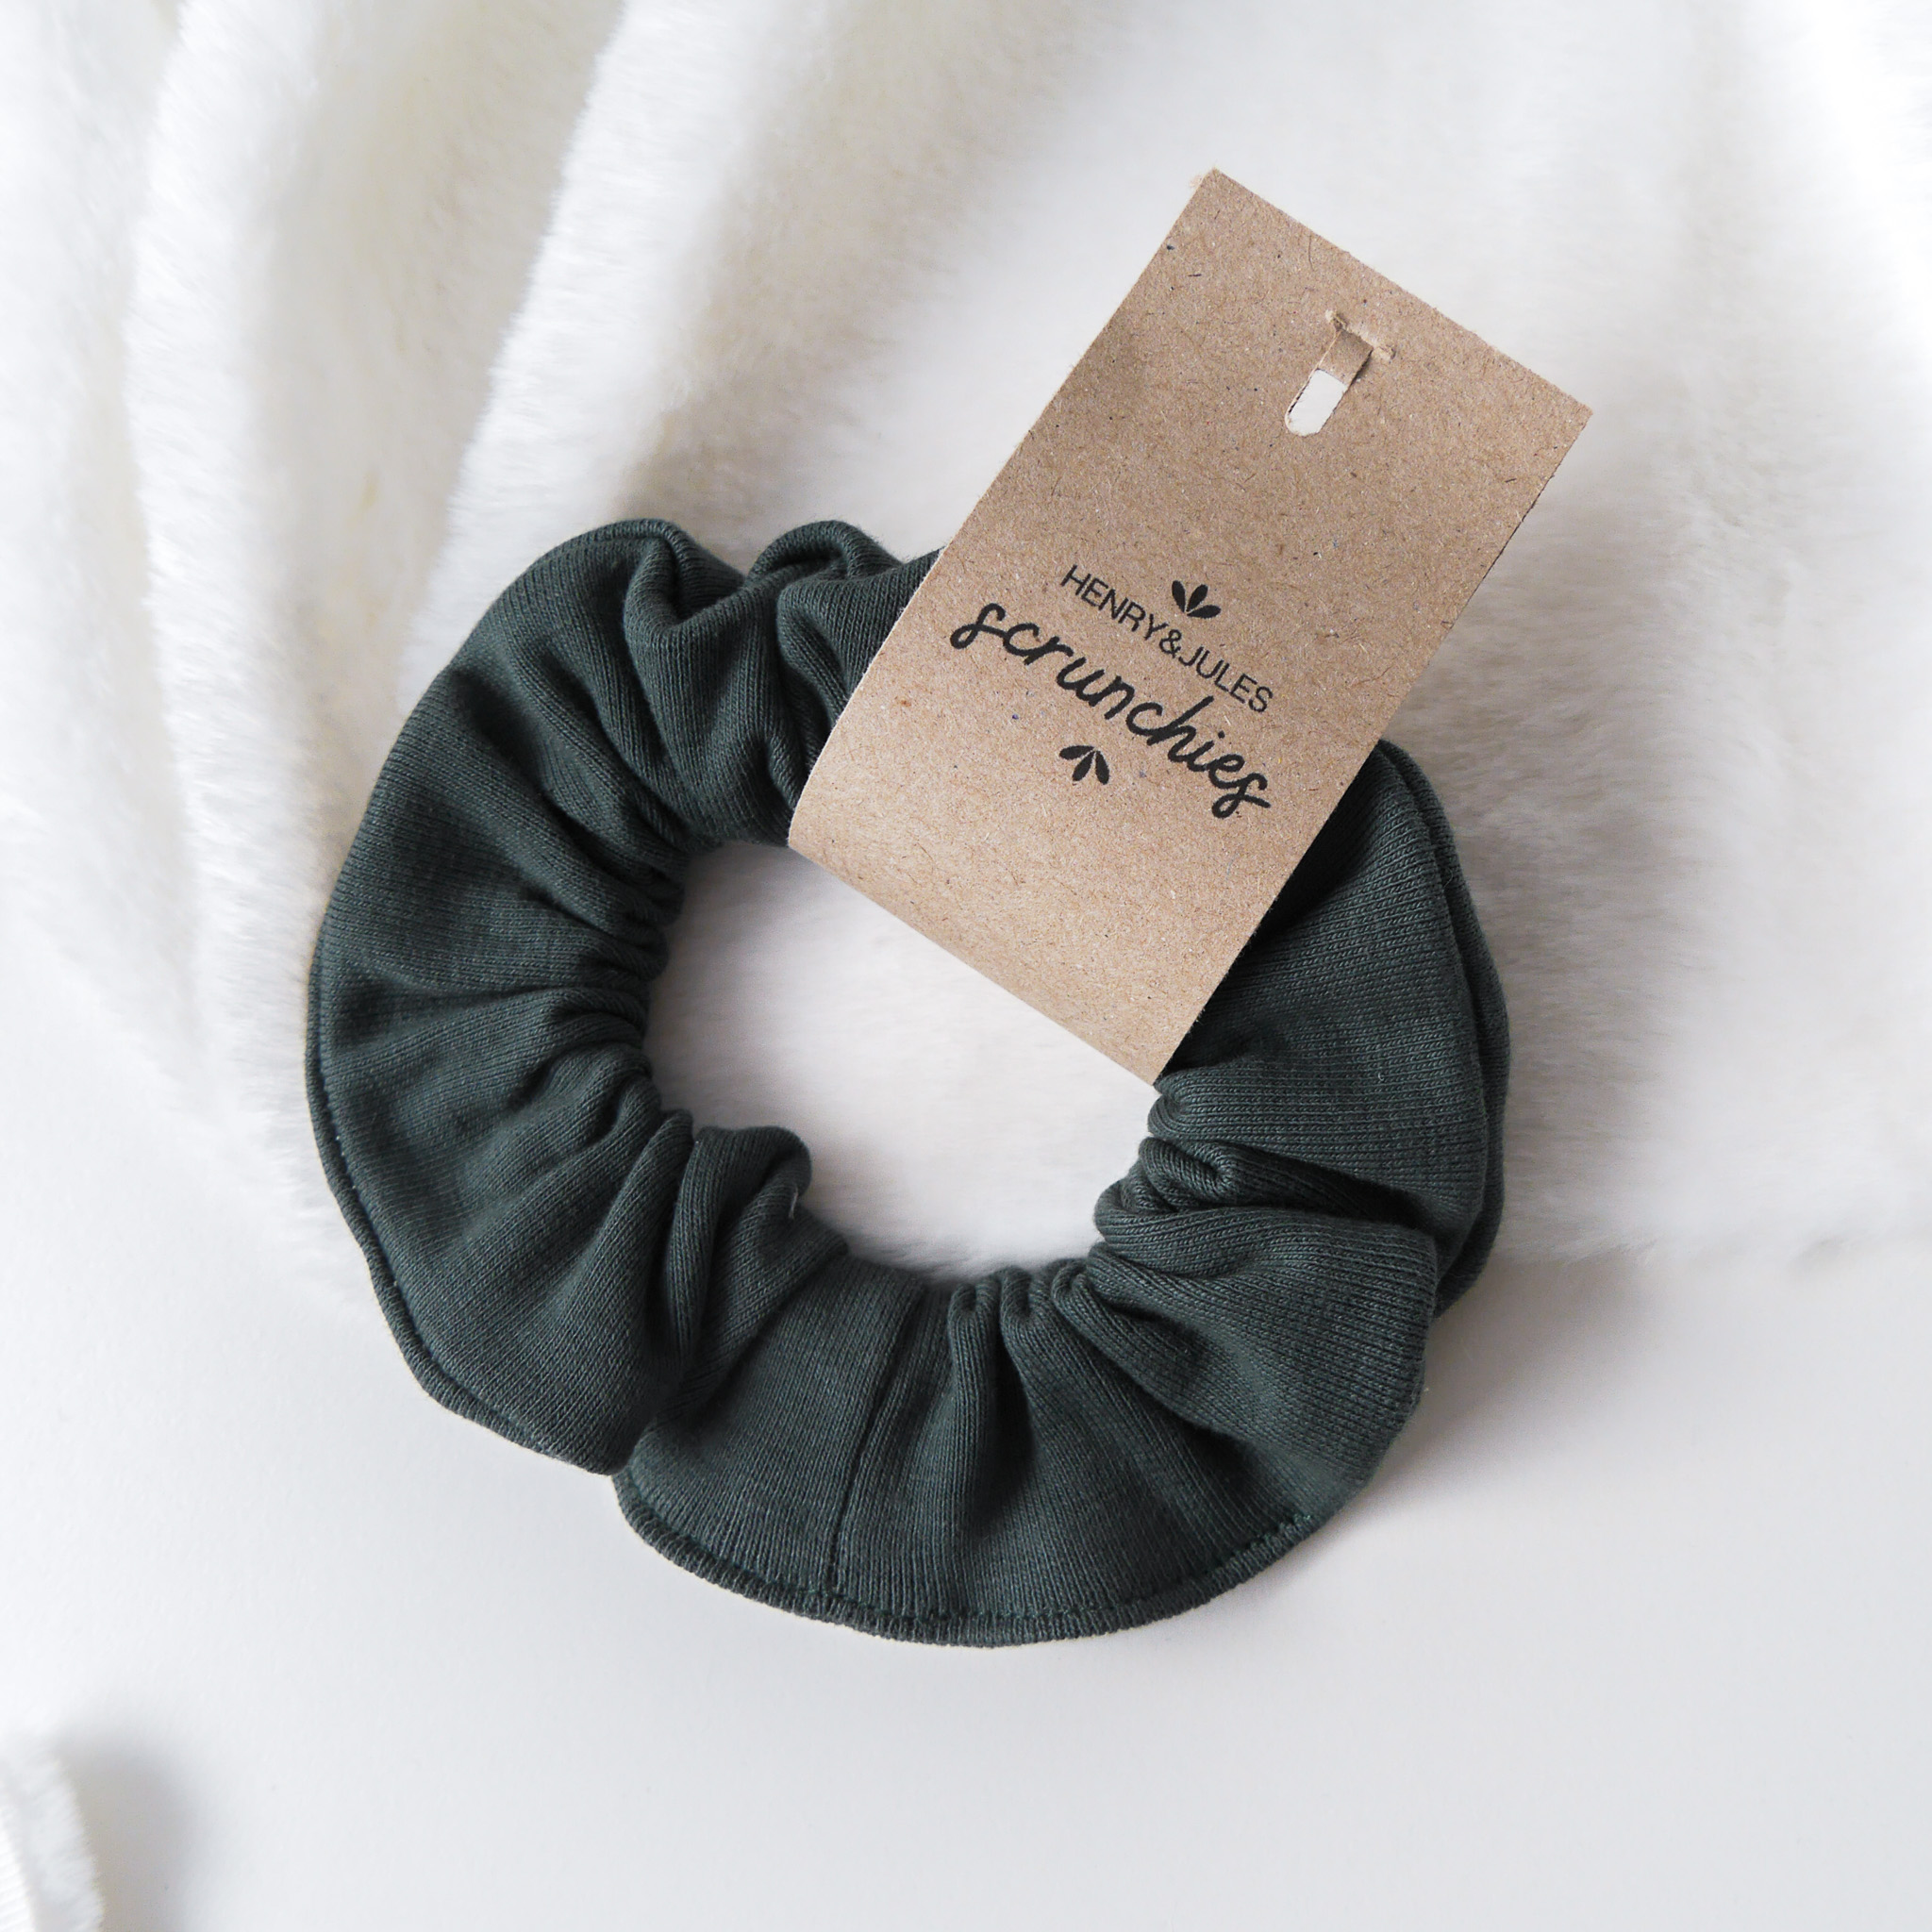 Handgemachtes Haargummi, sogenanntes Scrunchie, aus Stoff in der Farbe Dunkelgrün